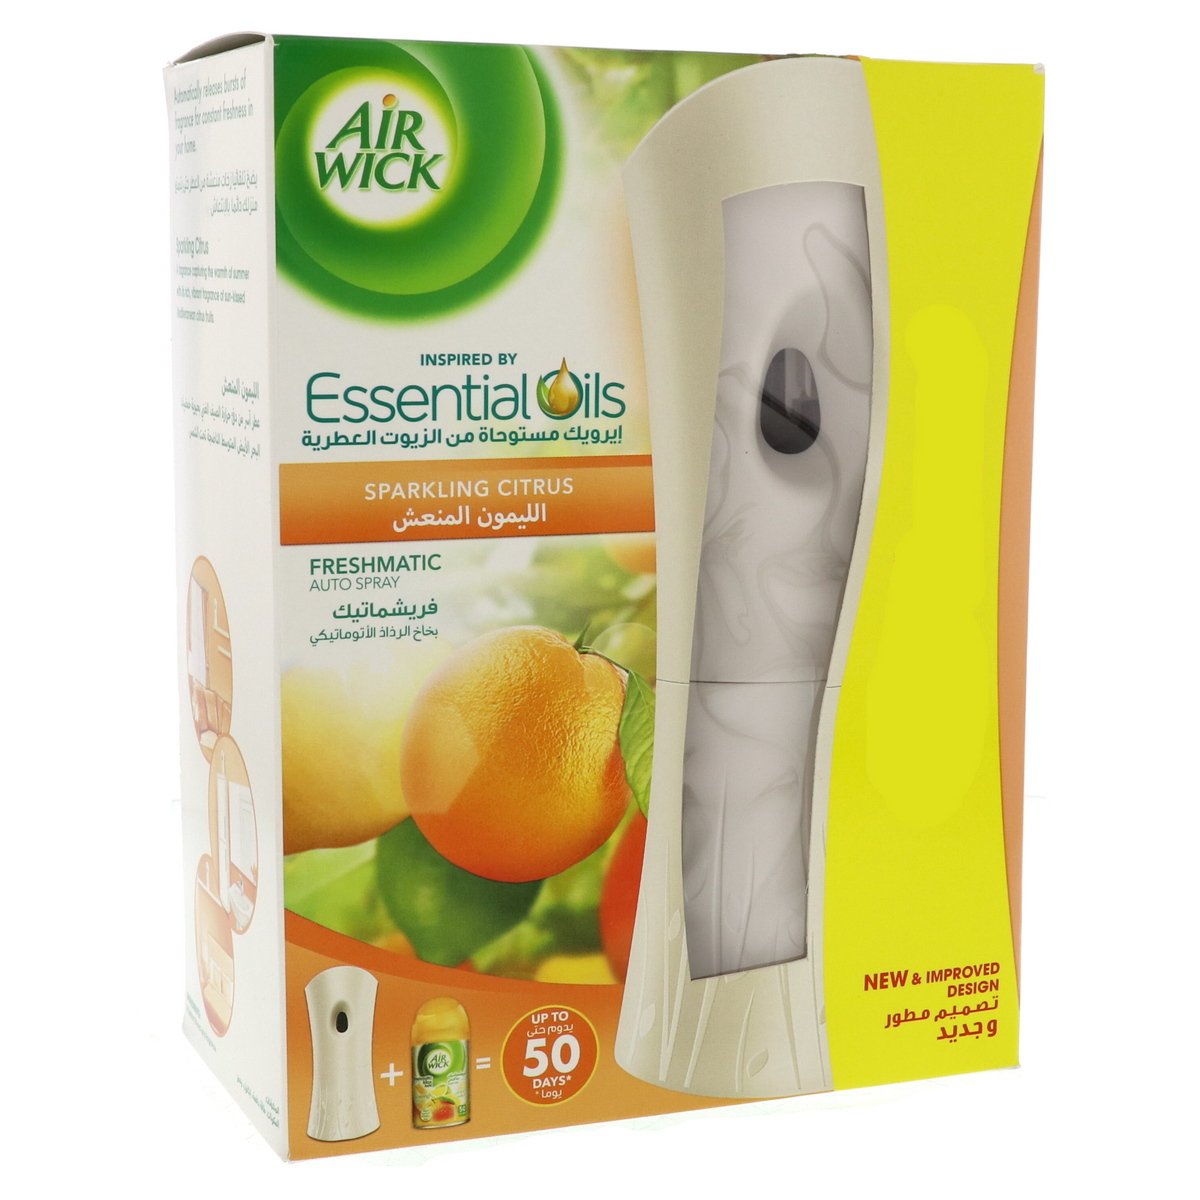 Airwick Freshmatic Kit Essential Oils Sparkling Citrus 250ml